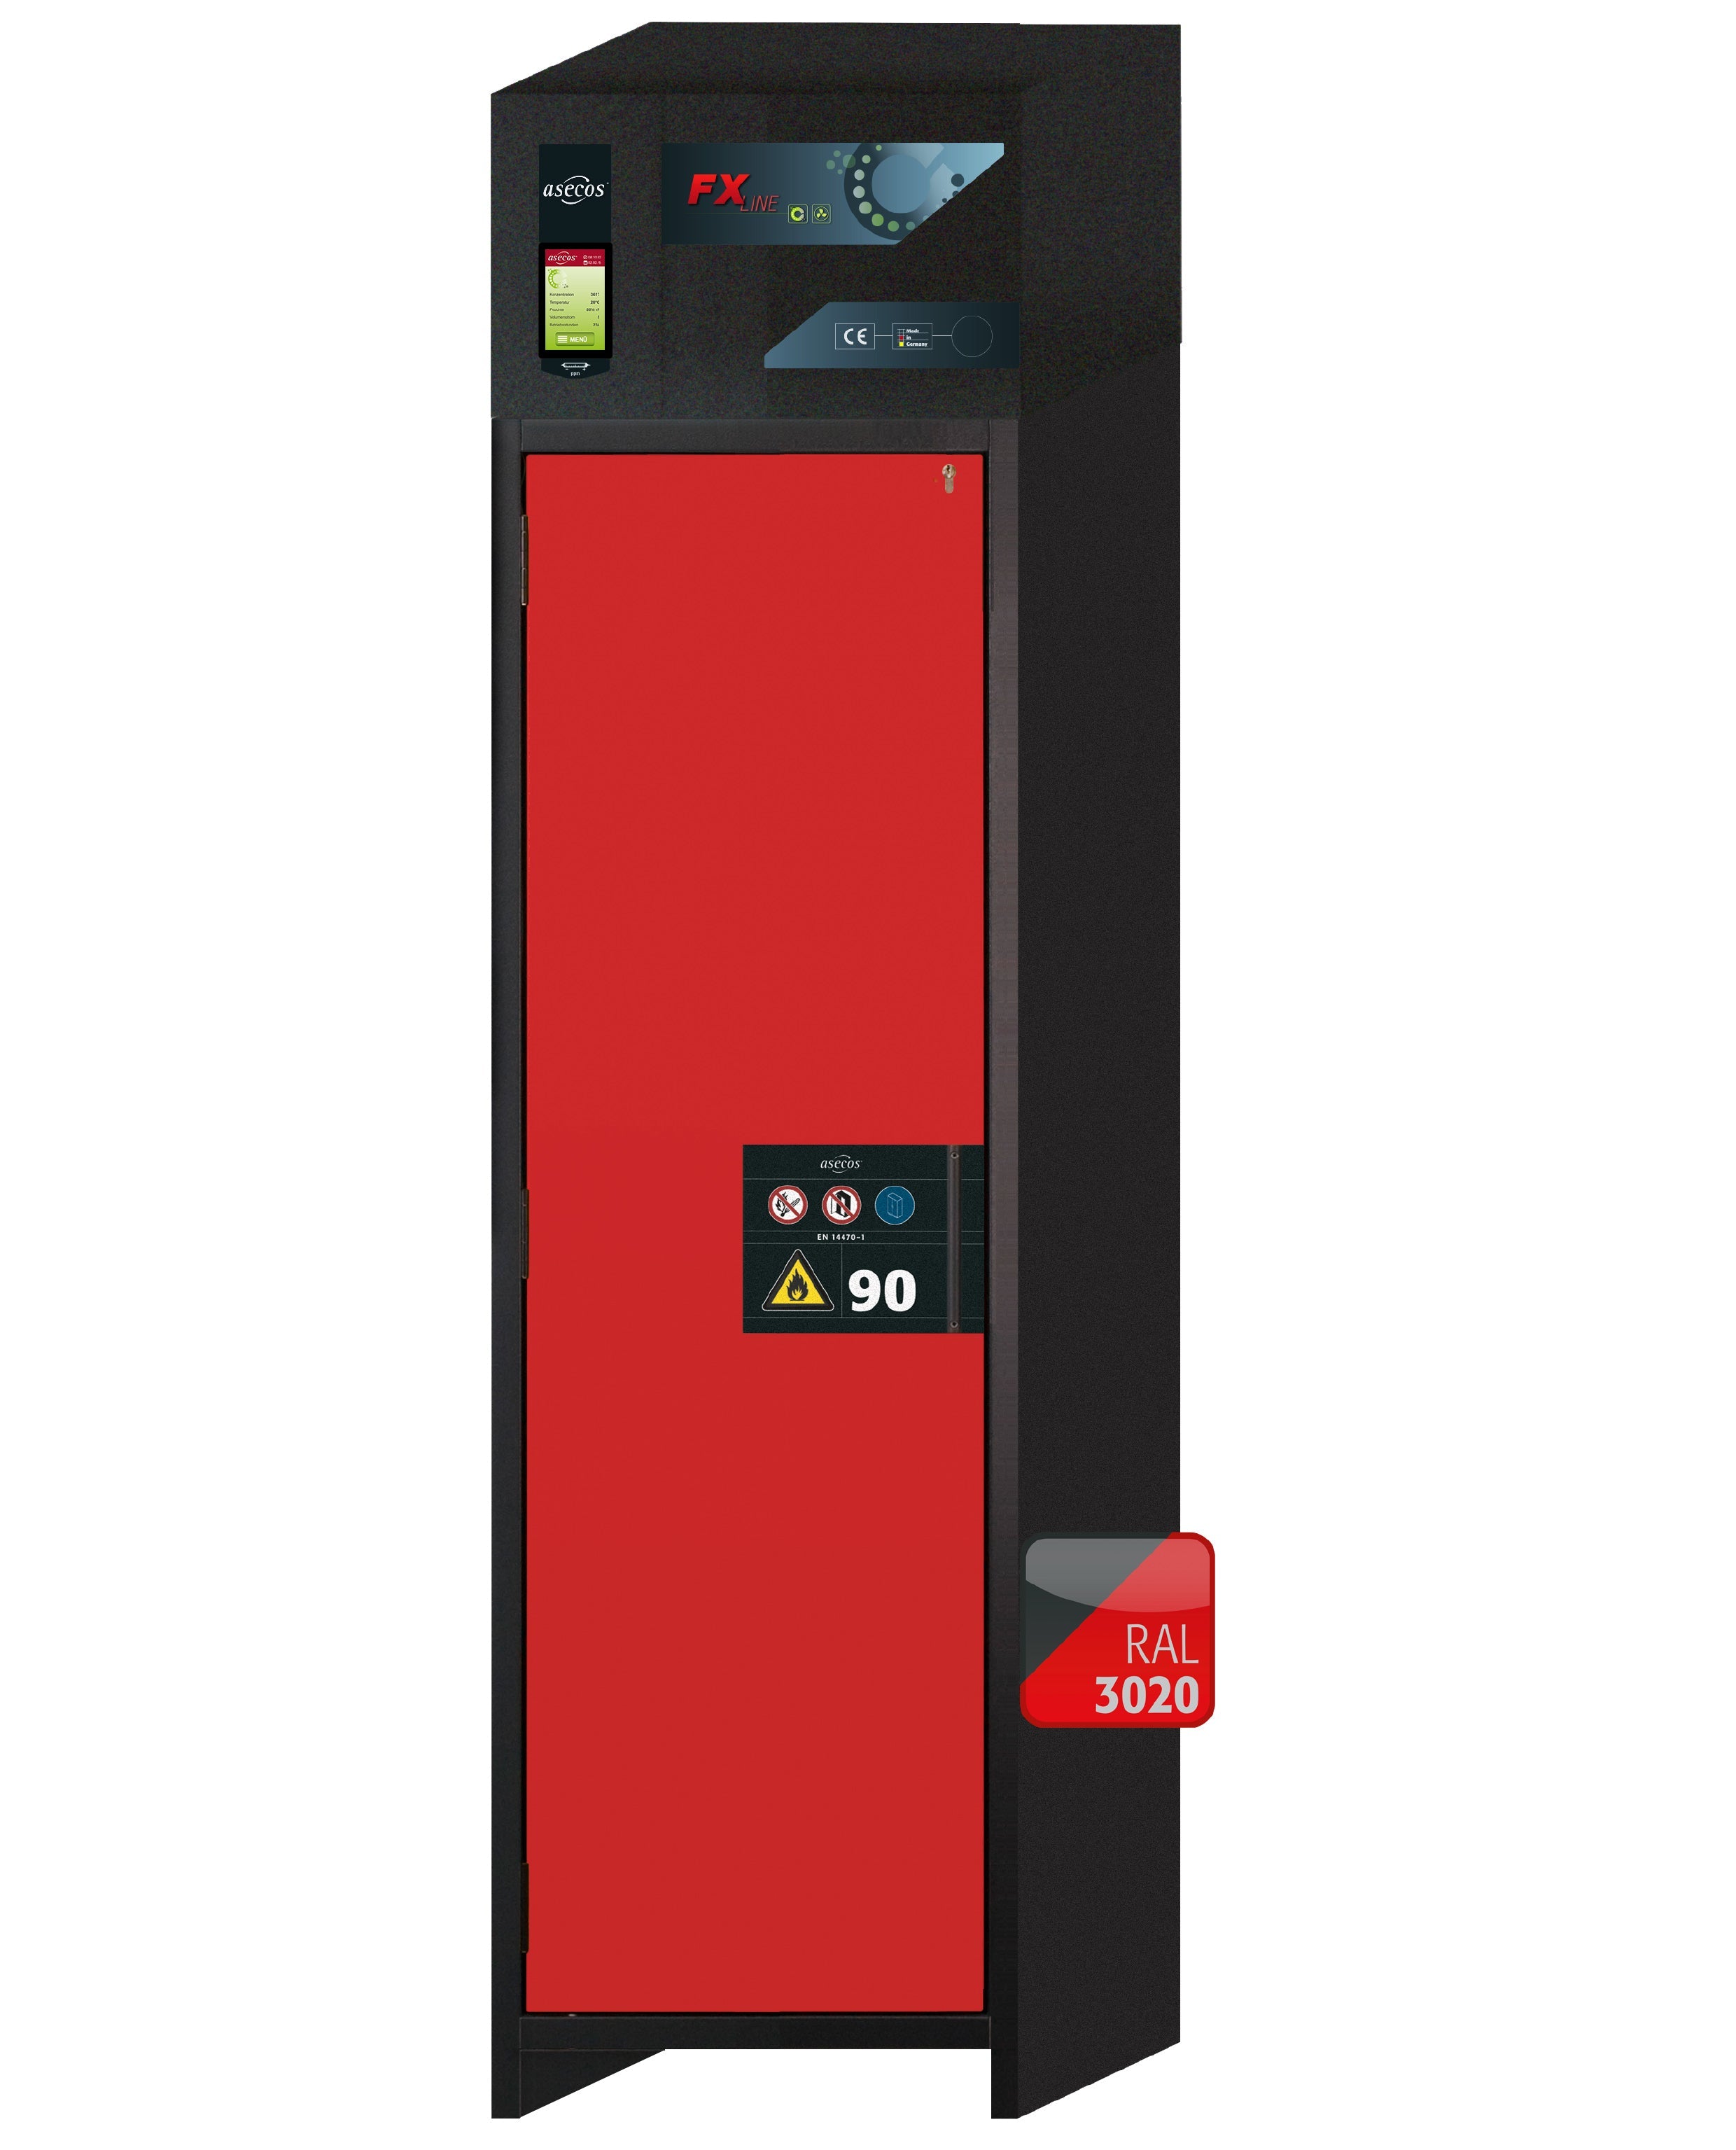 Armoire de filtration d'air de recirculation de type 90 FX-PEGASUS-90 modèle FX90.229.060.WDAC en rouge signalisation RAL 3020 avec 3x pieds de plateau standard (acier inoxydable 1.4301)